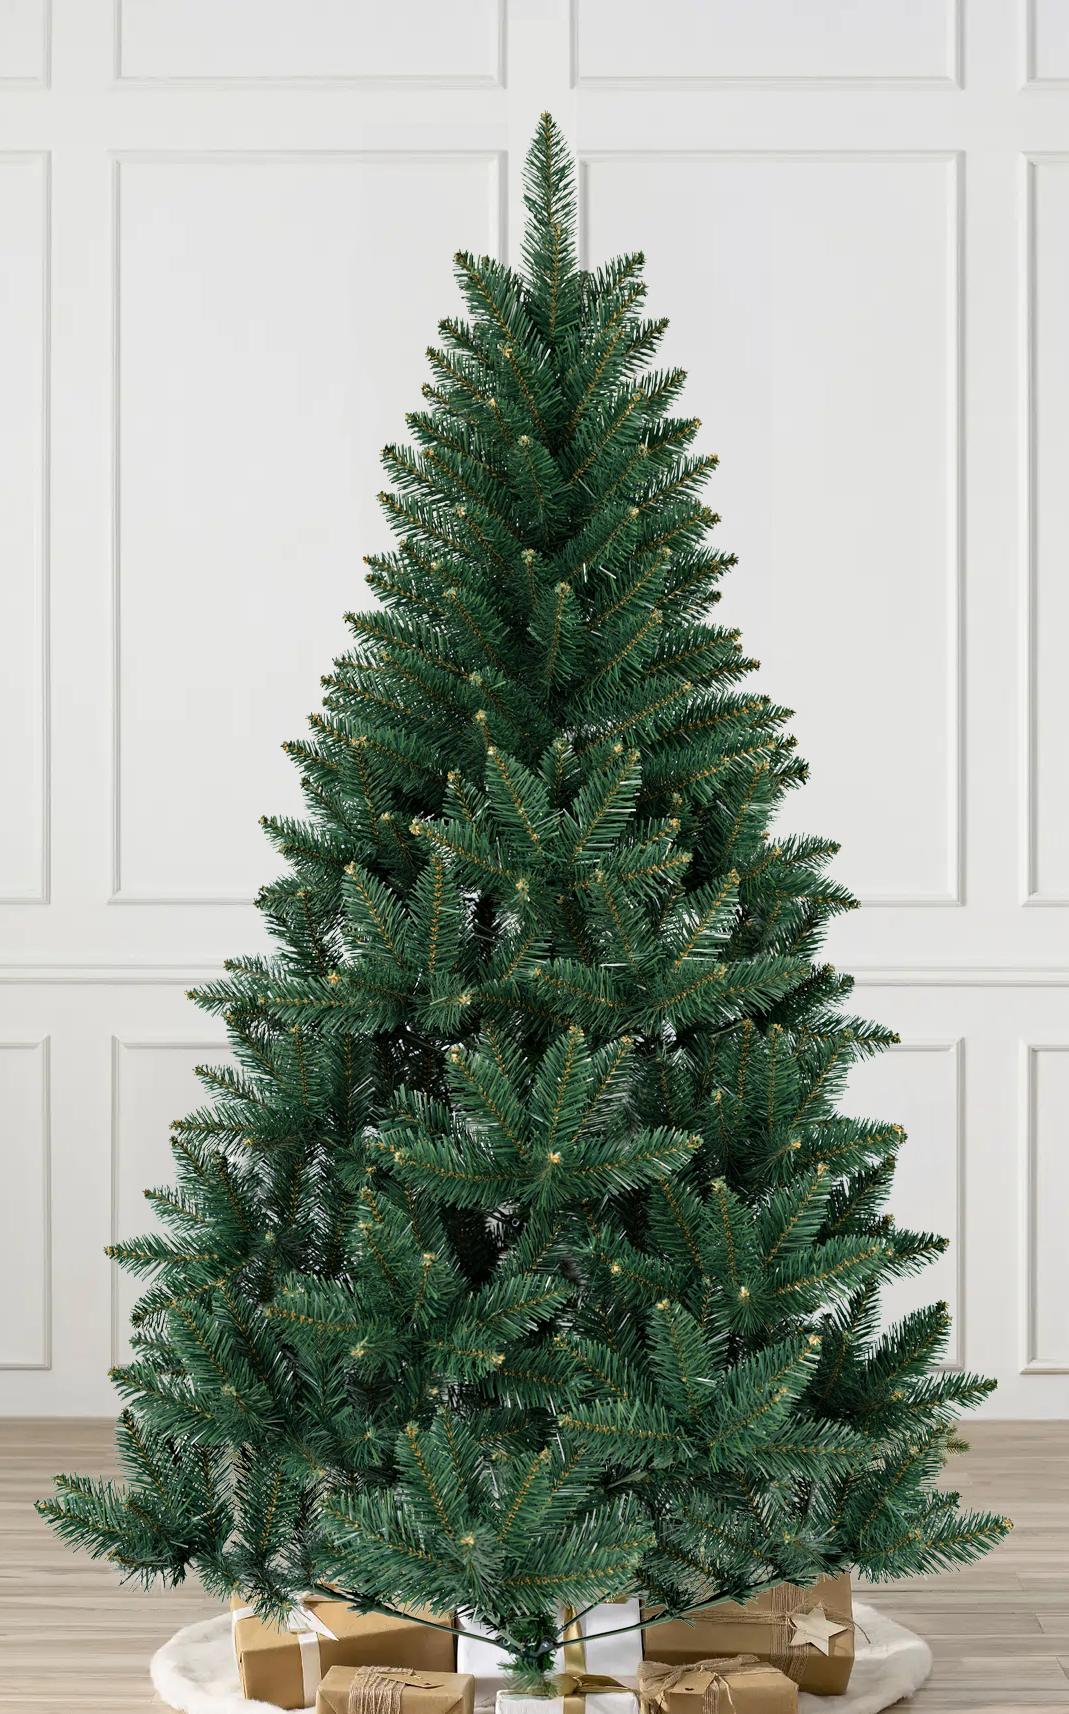 QU-1 Christmas tree